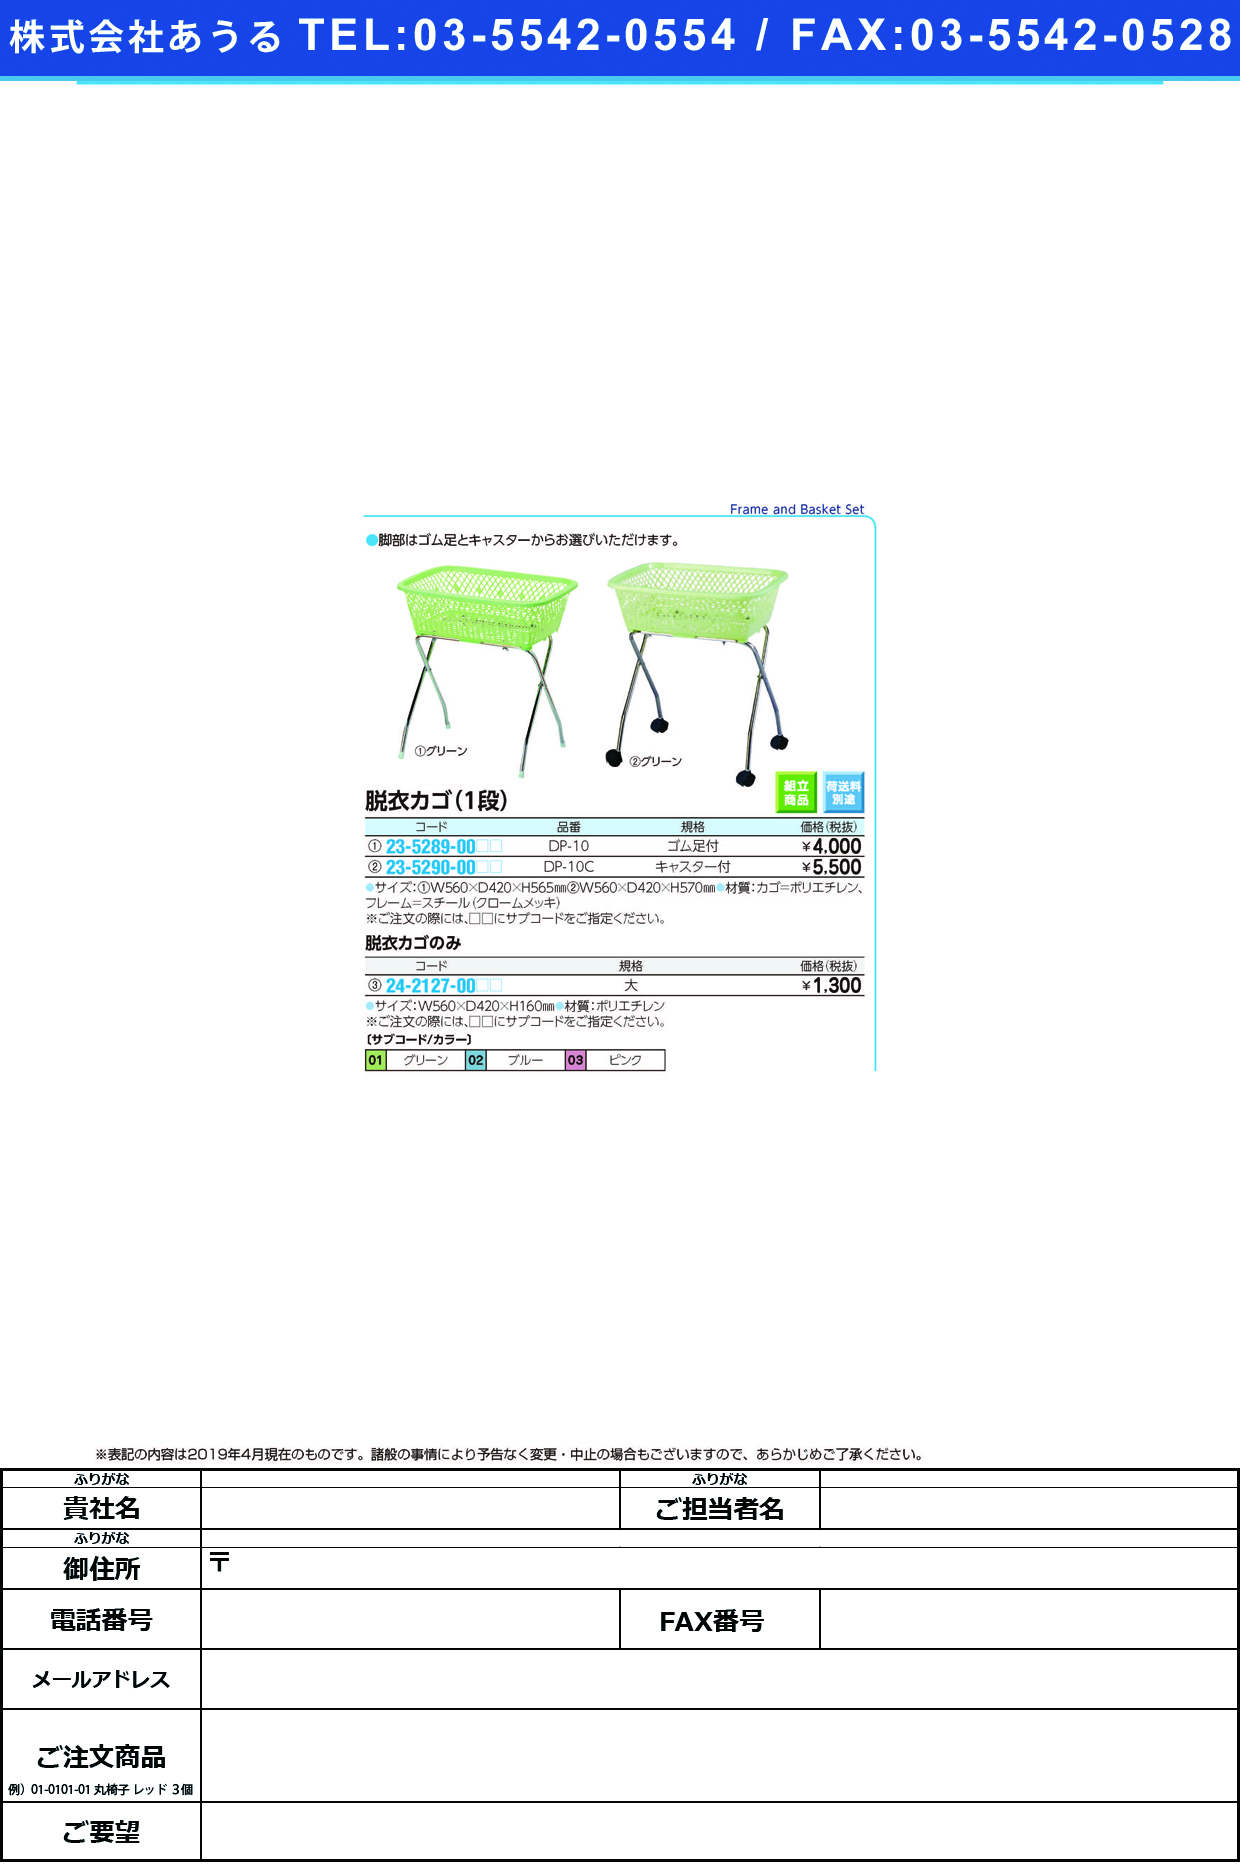 (23-5290-00)脱衣カゴ DP-10C(ｷｬｽﾀｰﾂｷ) ﾀﾞﾂｲｶｺﾞ グリーン【1台単位】【2019年カタログ商品】